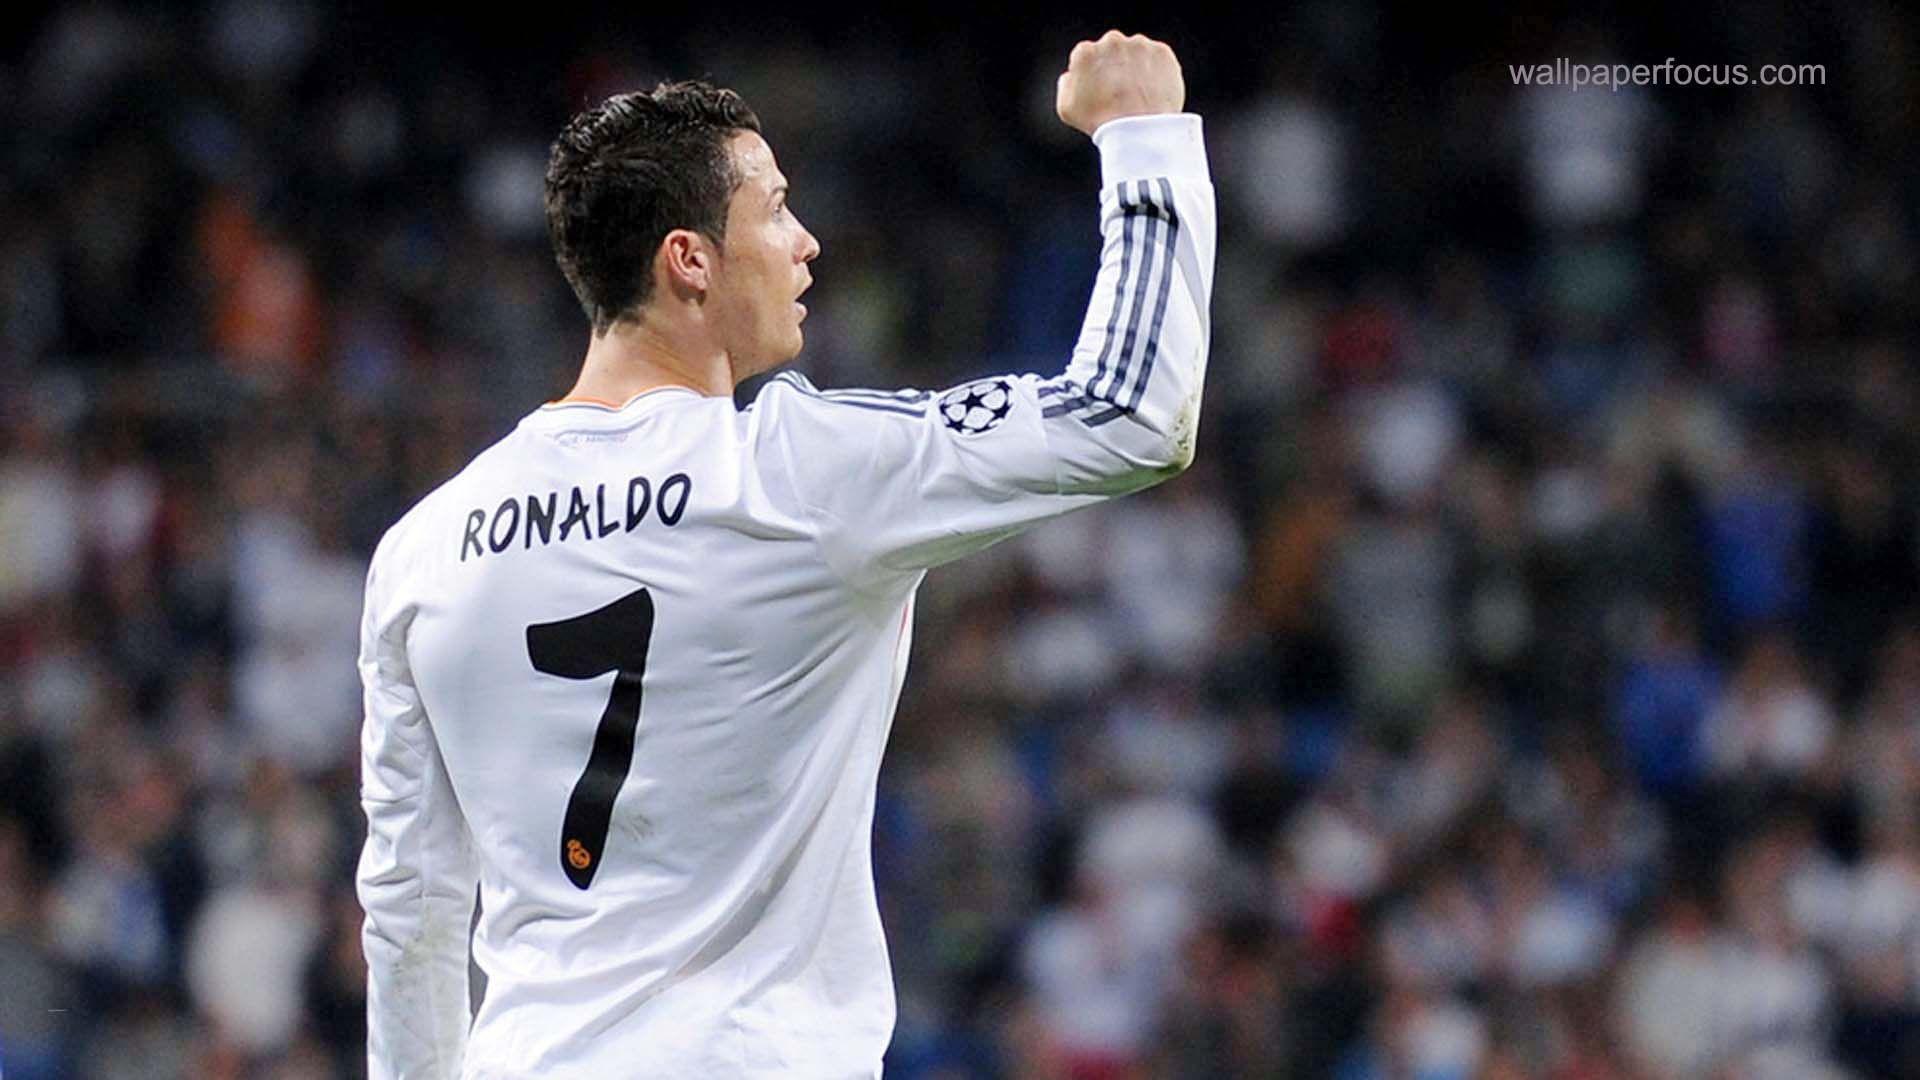 Bạn muốn trang trí cho Desktop của mình với một hình nền Ronaldo đẹp nhưng không biết nơi nào có chất lượng tốt? Hãy ghé thăm Top Ảnh Đẹp. Đó là nơi tốt nhất để tìm kiếm những hình ảnh chất lượng cao của Ronaldo và biến chiếc máy tính của bạn thành một tác phẩm nghệ thuật.